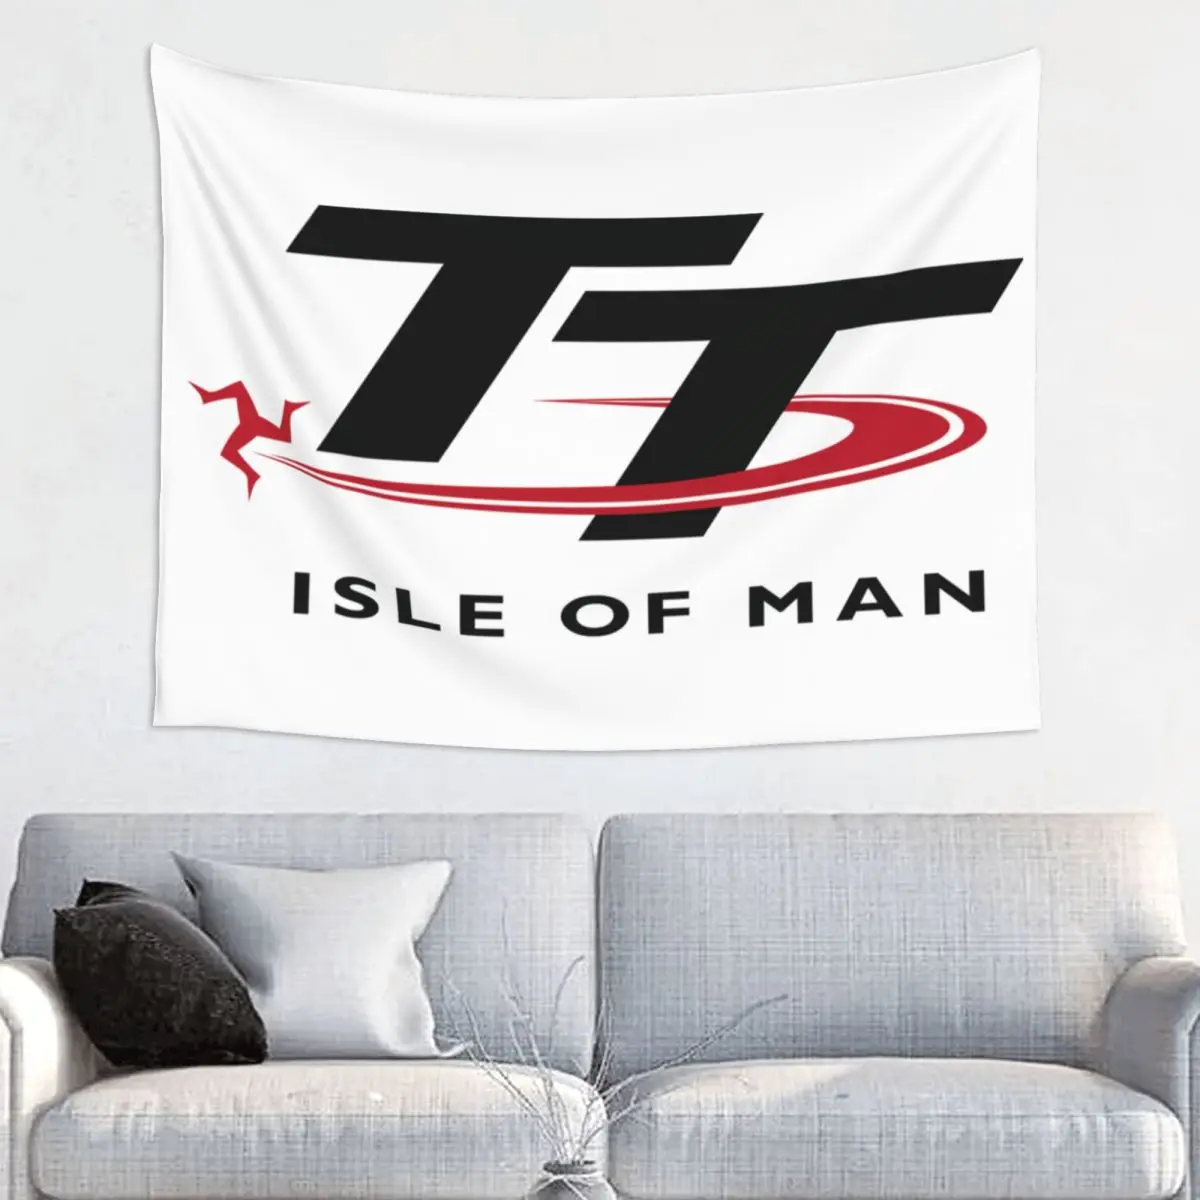 Гобелен Isle Of Man TT Races, висящий на стене для гостиной, гобелены для спортивных мотоциклов в стиле хиппи, декор комнаты